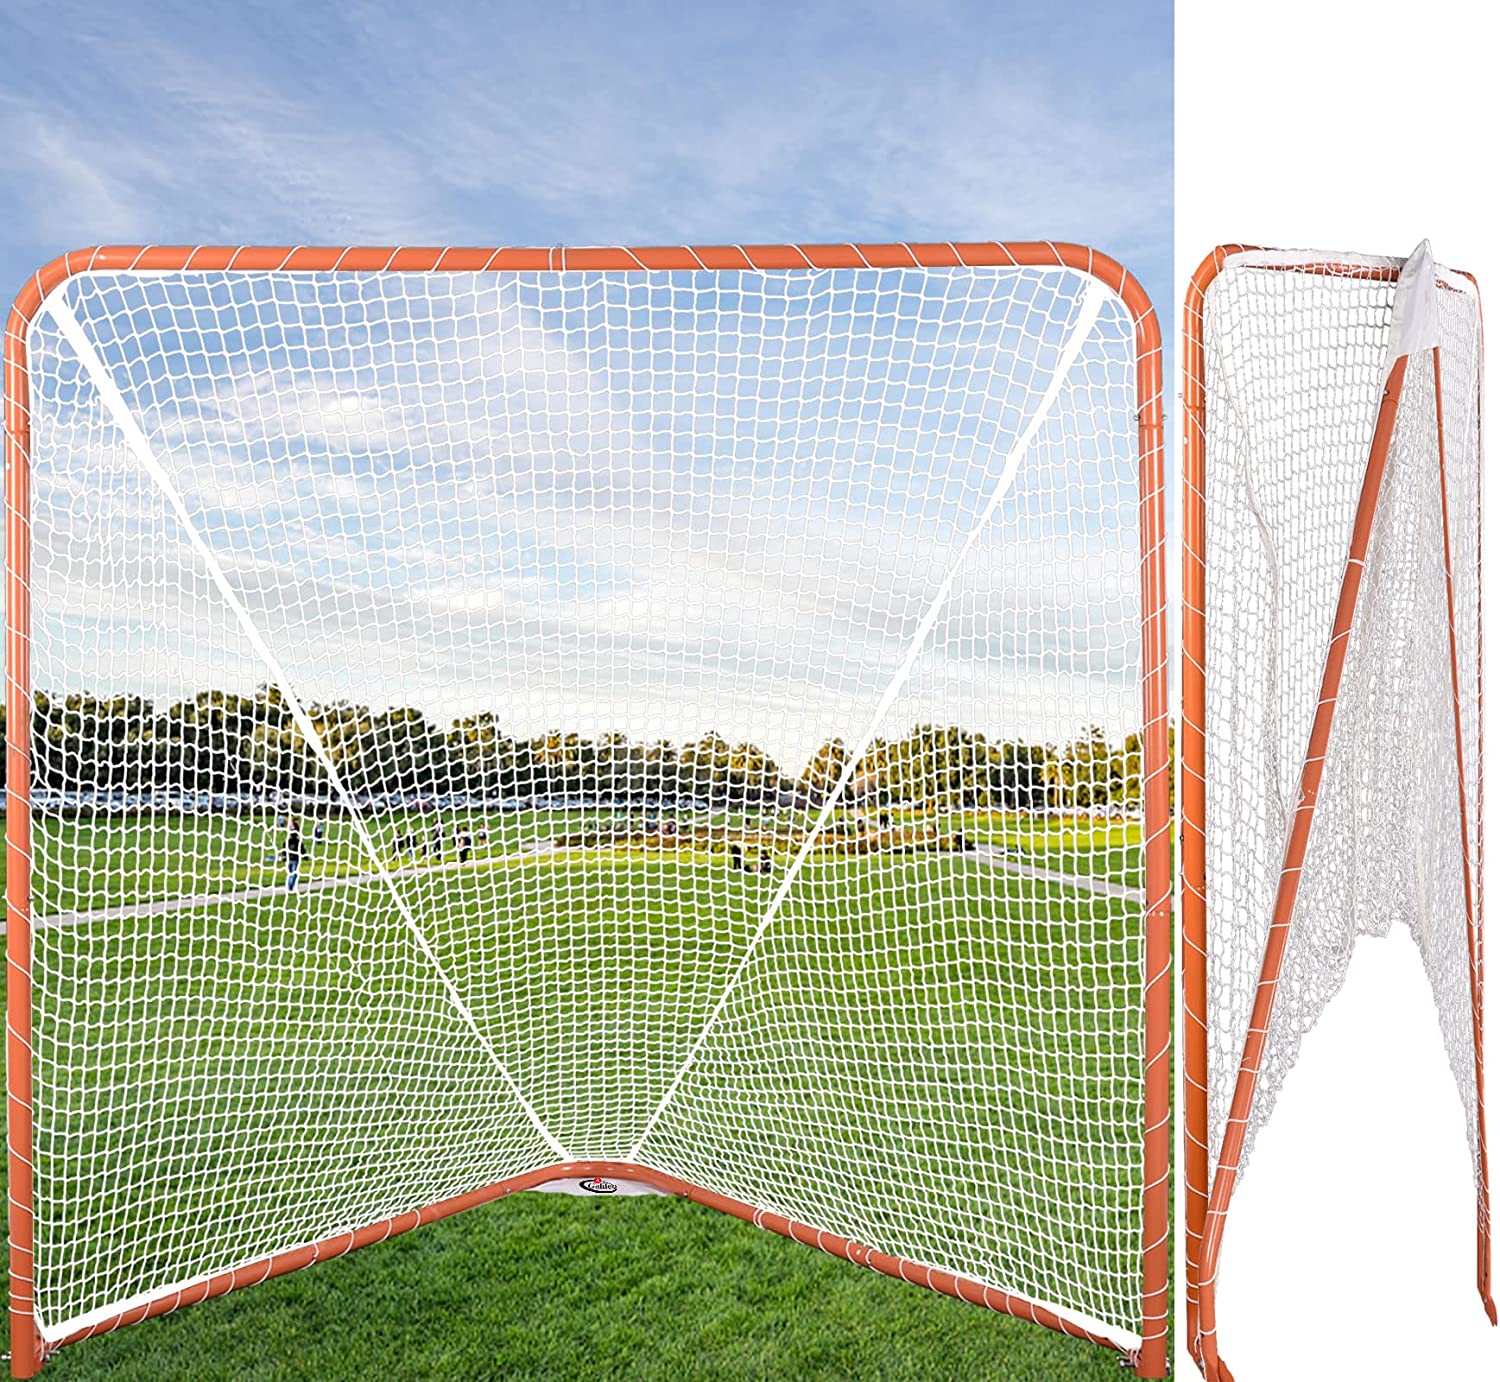 6'X6'Gagalileo portería de lacrosse portátil/red de lacrosse con marco de acero